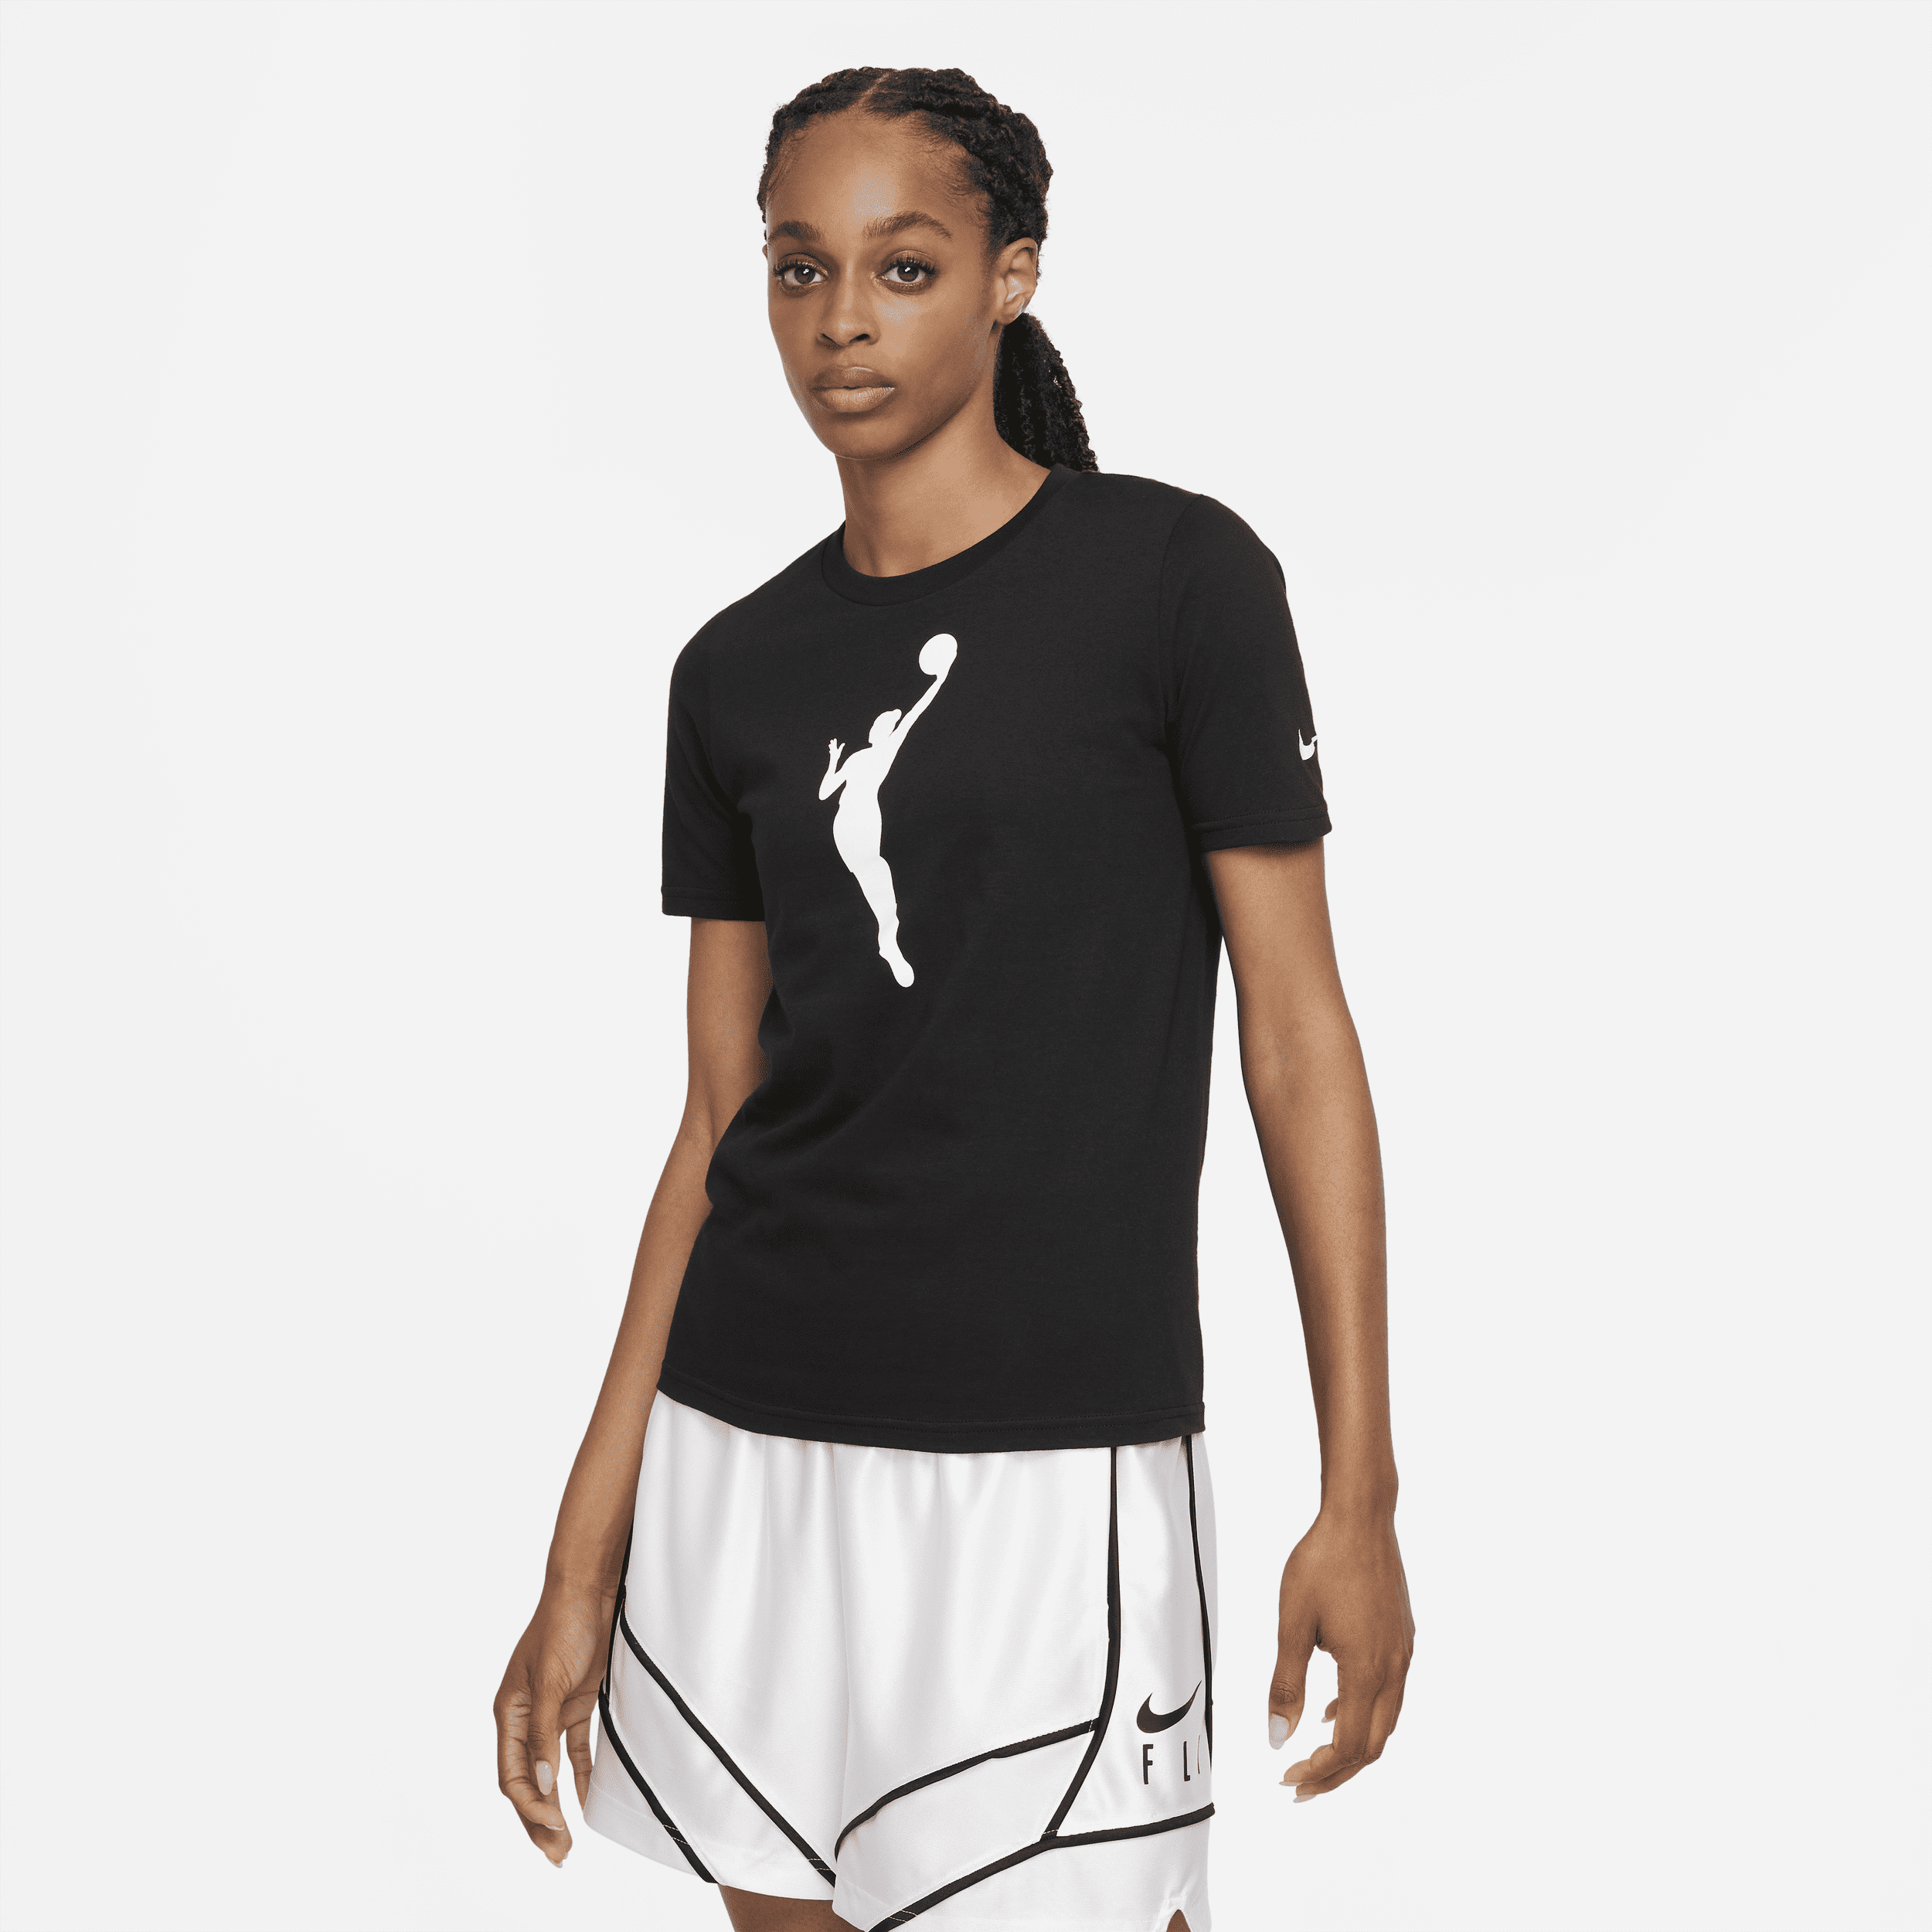 Team 13 Camiseta Nike WNBA - Niño/a - Negro